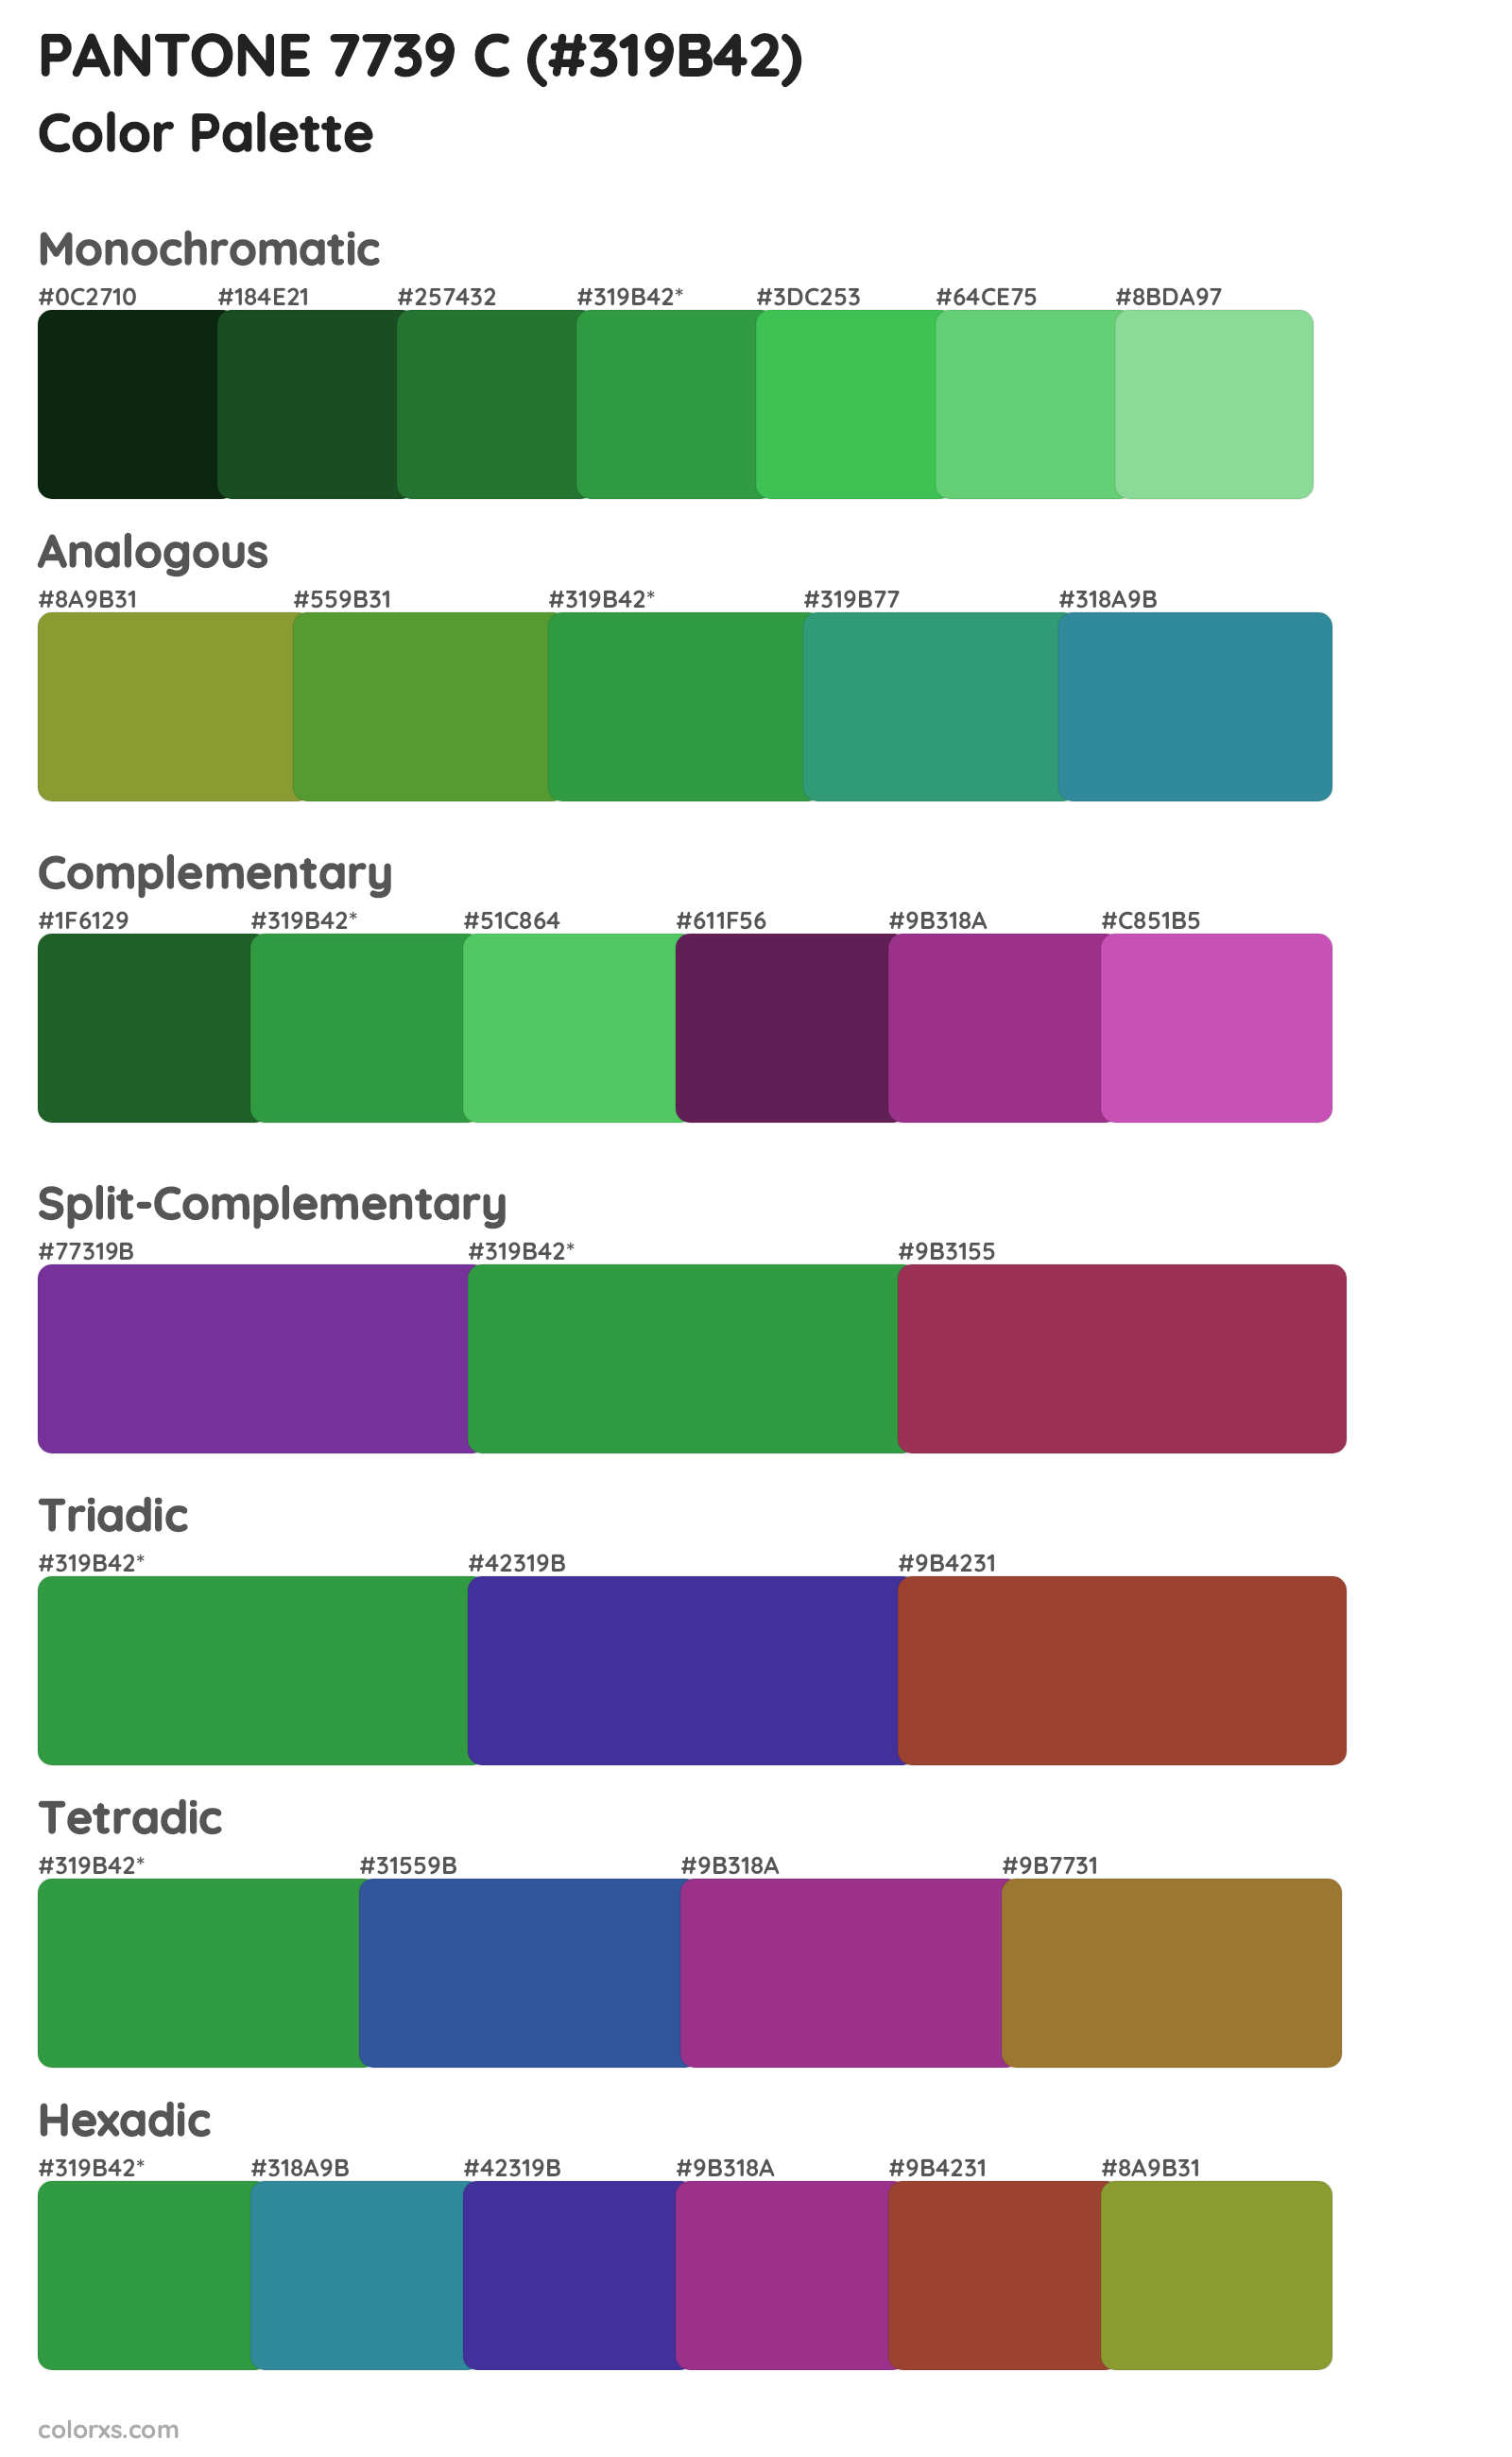 PANTONE 7739 C Color Scheme Palettes